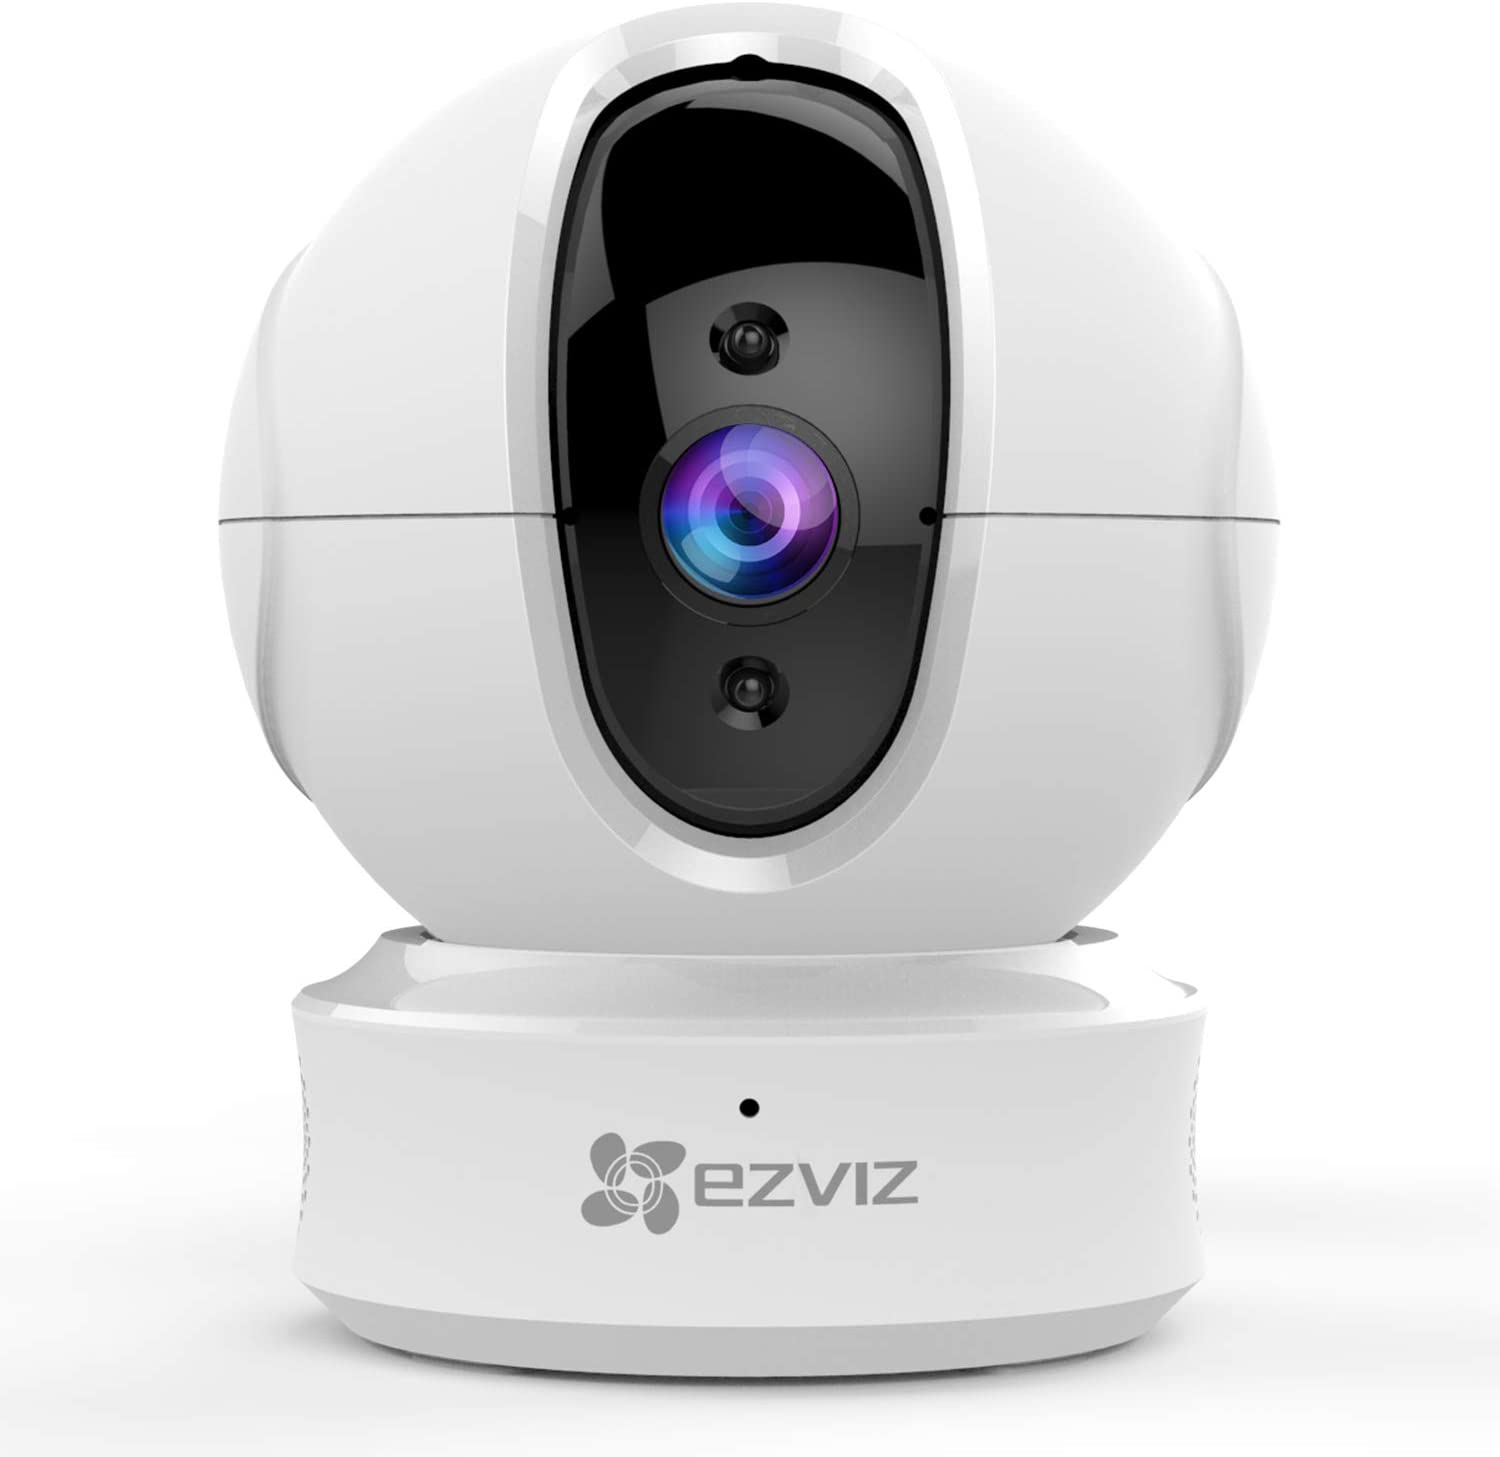 First Ezviz HomeKit Camera Surfaces - Homekit News and Reviews